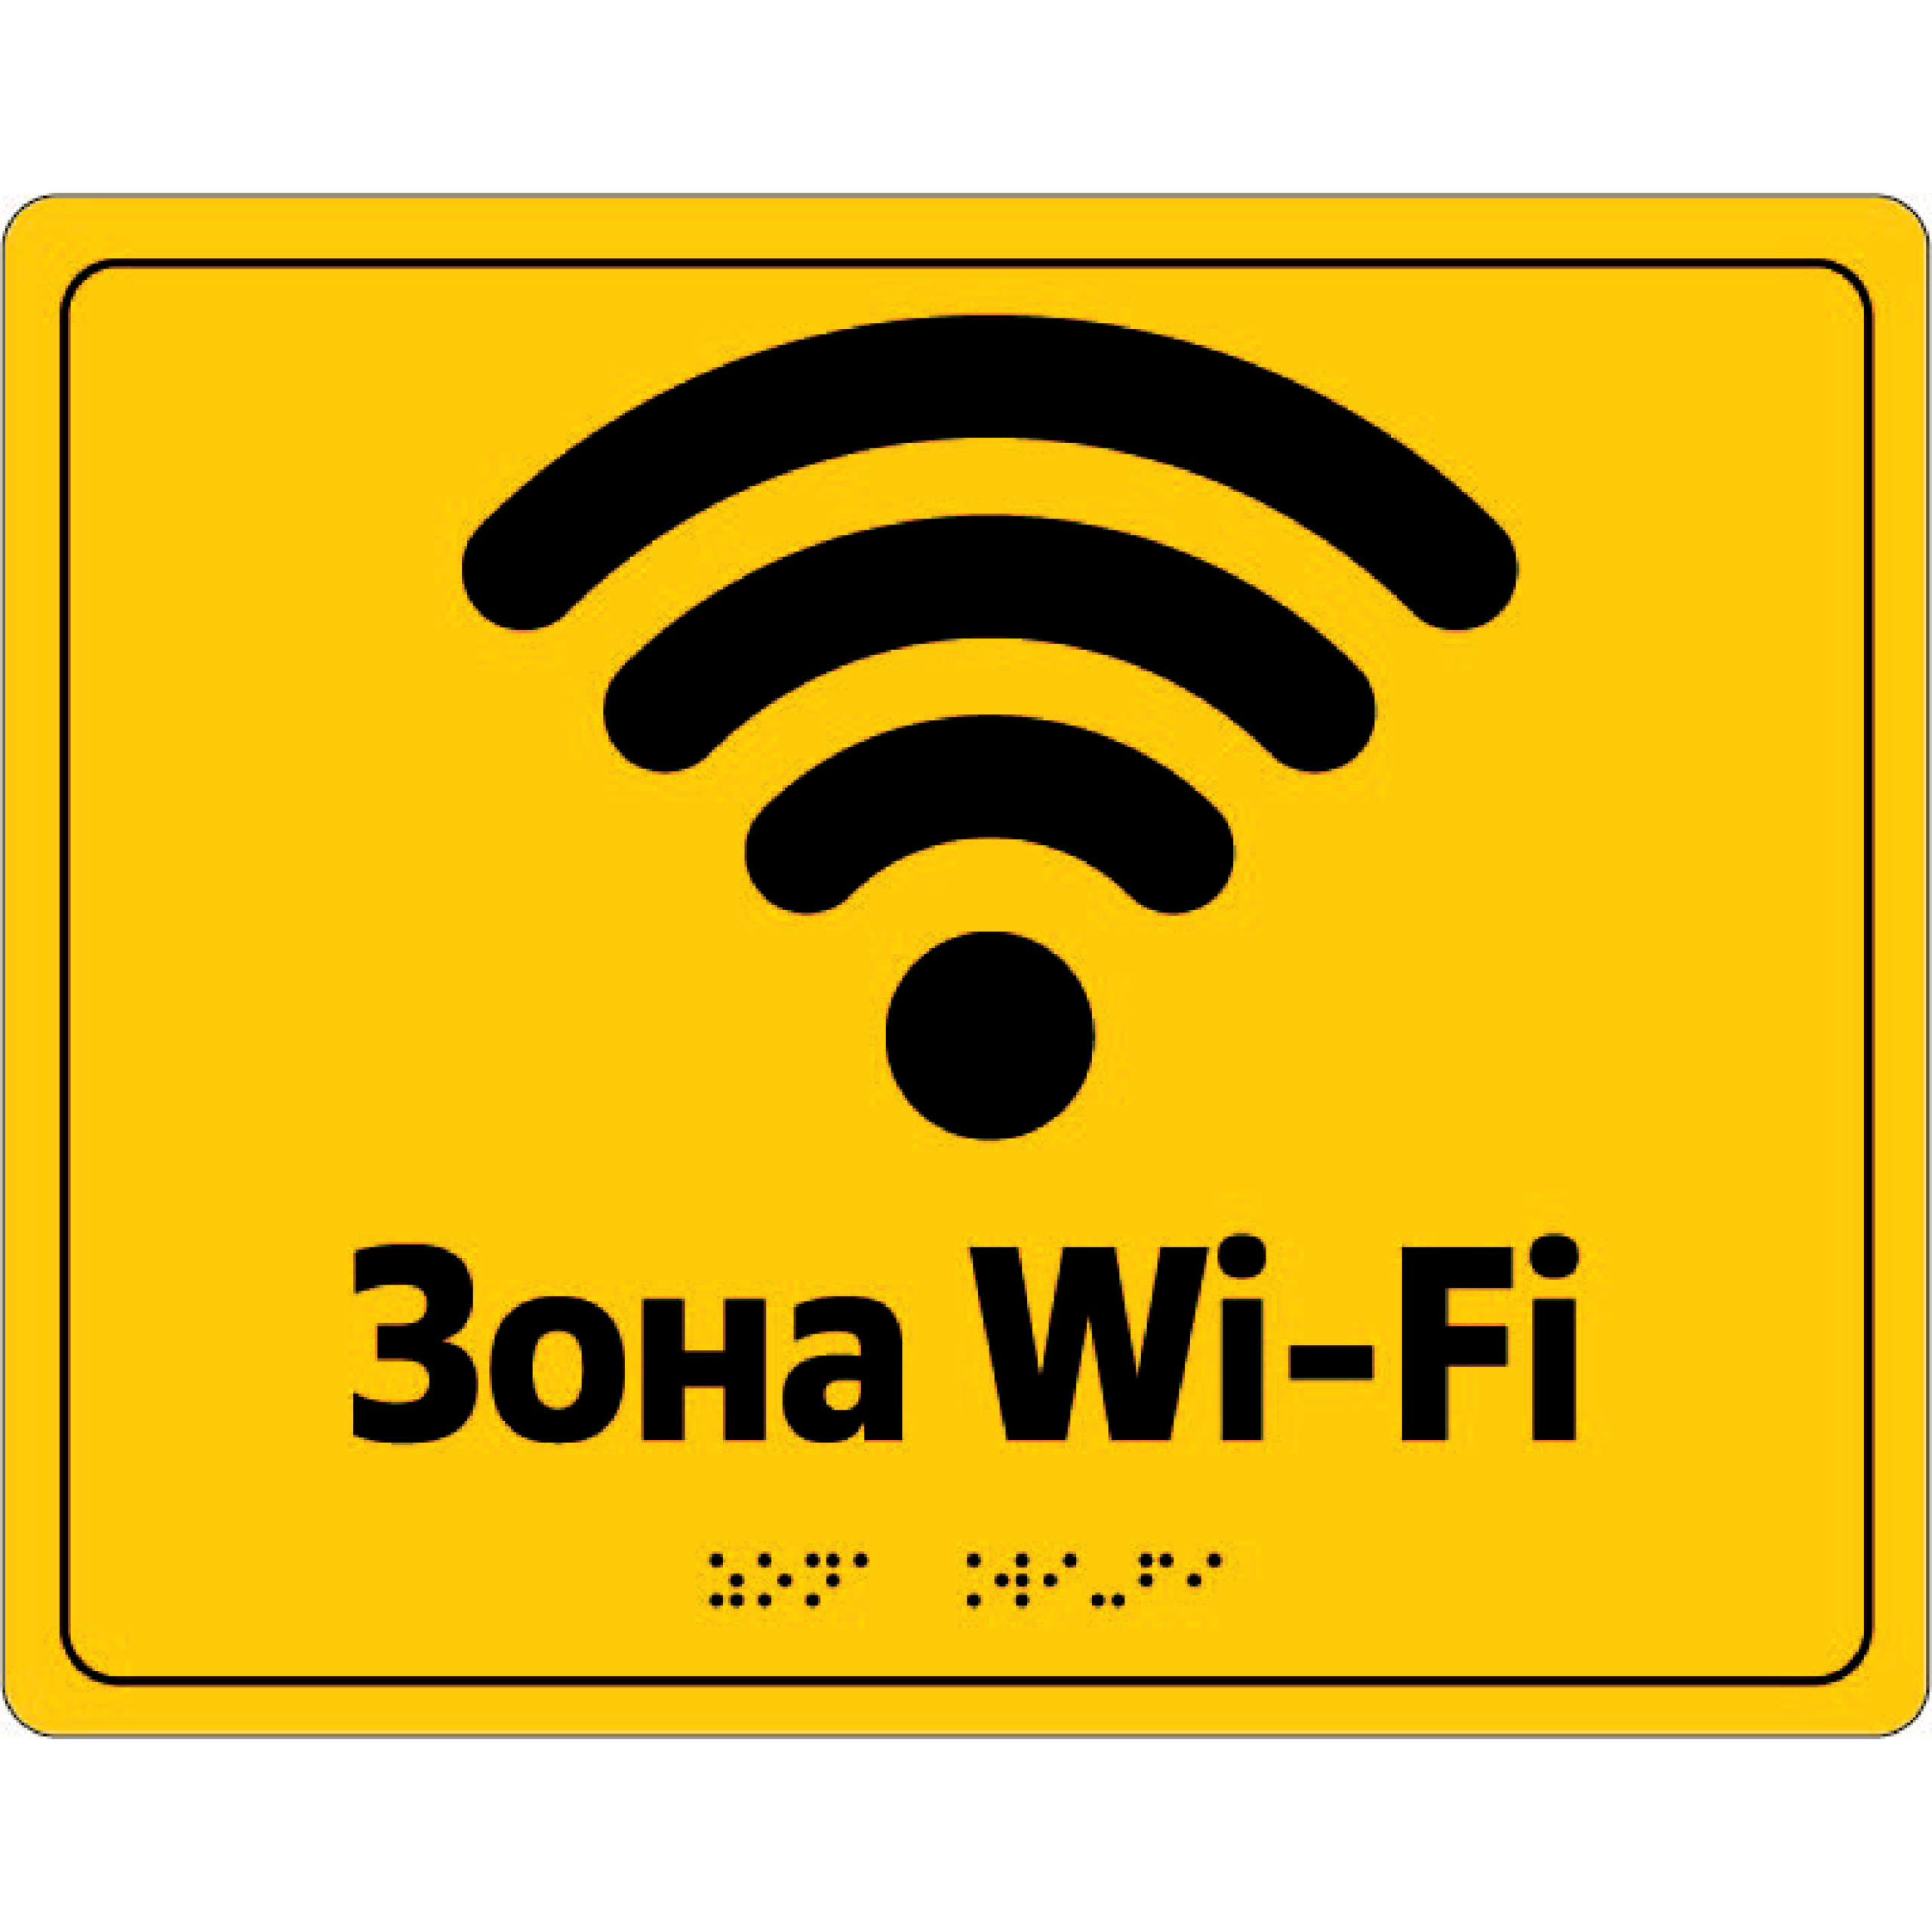 Табличка "Зона Wi-Fi"" доступна у різних розмірах: 250x250x3 мм, 350x150 мм та 300x150 мм. Ми надаємо можливість обирати мову, яка підходить вам - англійська, українська, а також шрифт Брайля для покращення доступності.